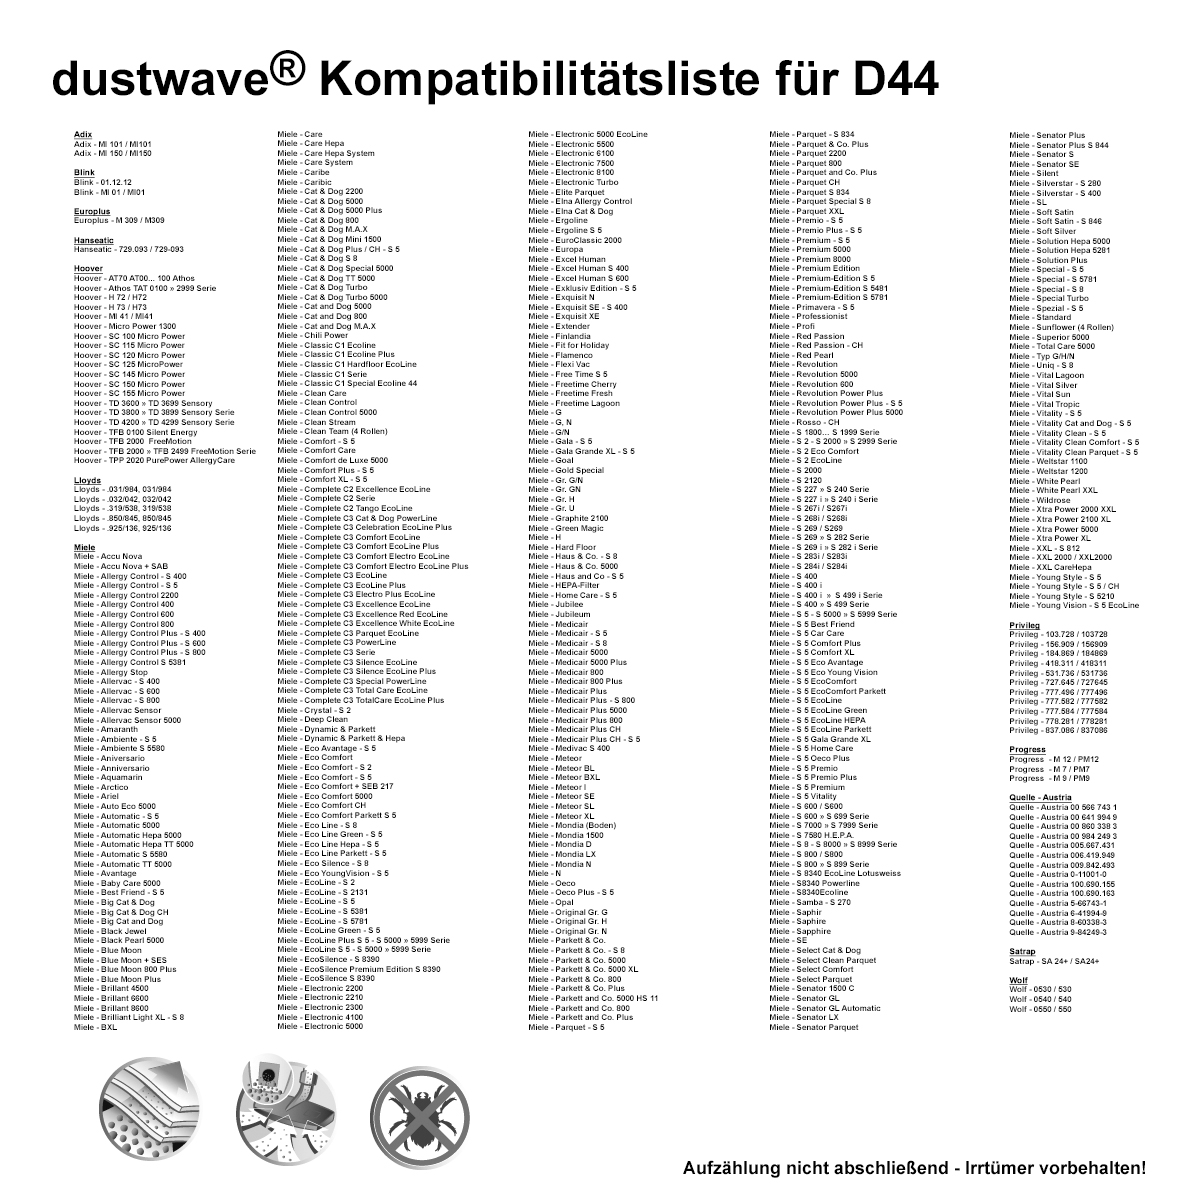 Dustwave® 20 Staubsaugerbeutel für Miele S5510 / S 5510 - hocheffizient, mehrlagiges Mikrovlies mit Hygieneverschluss - Made in Germany